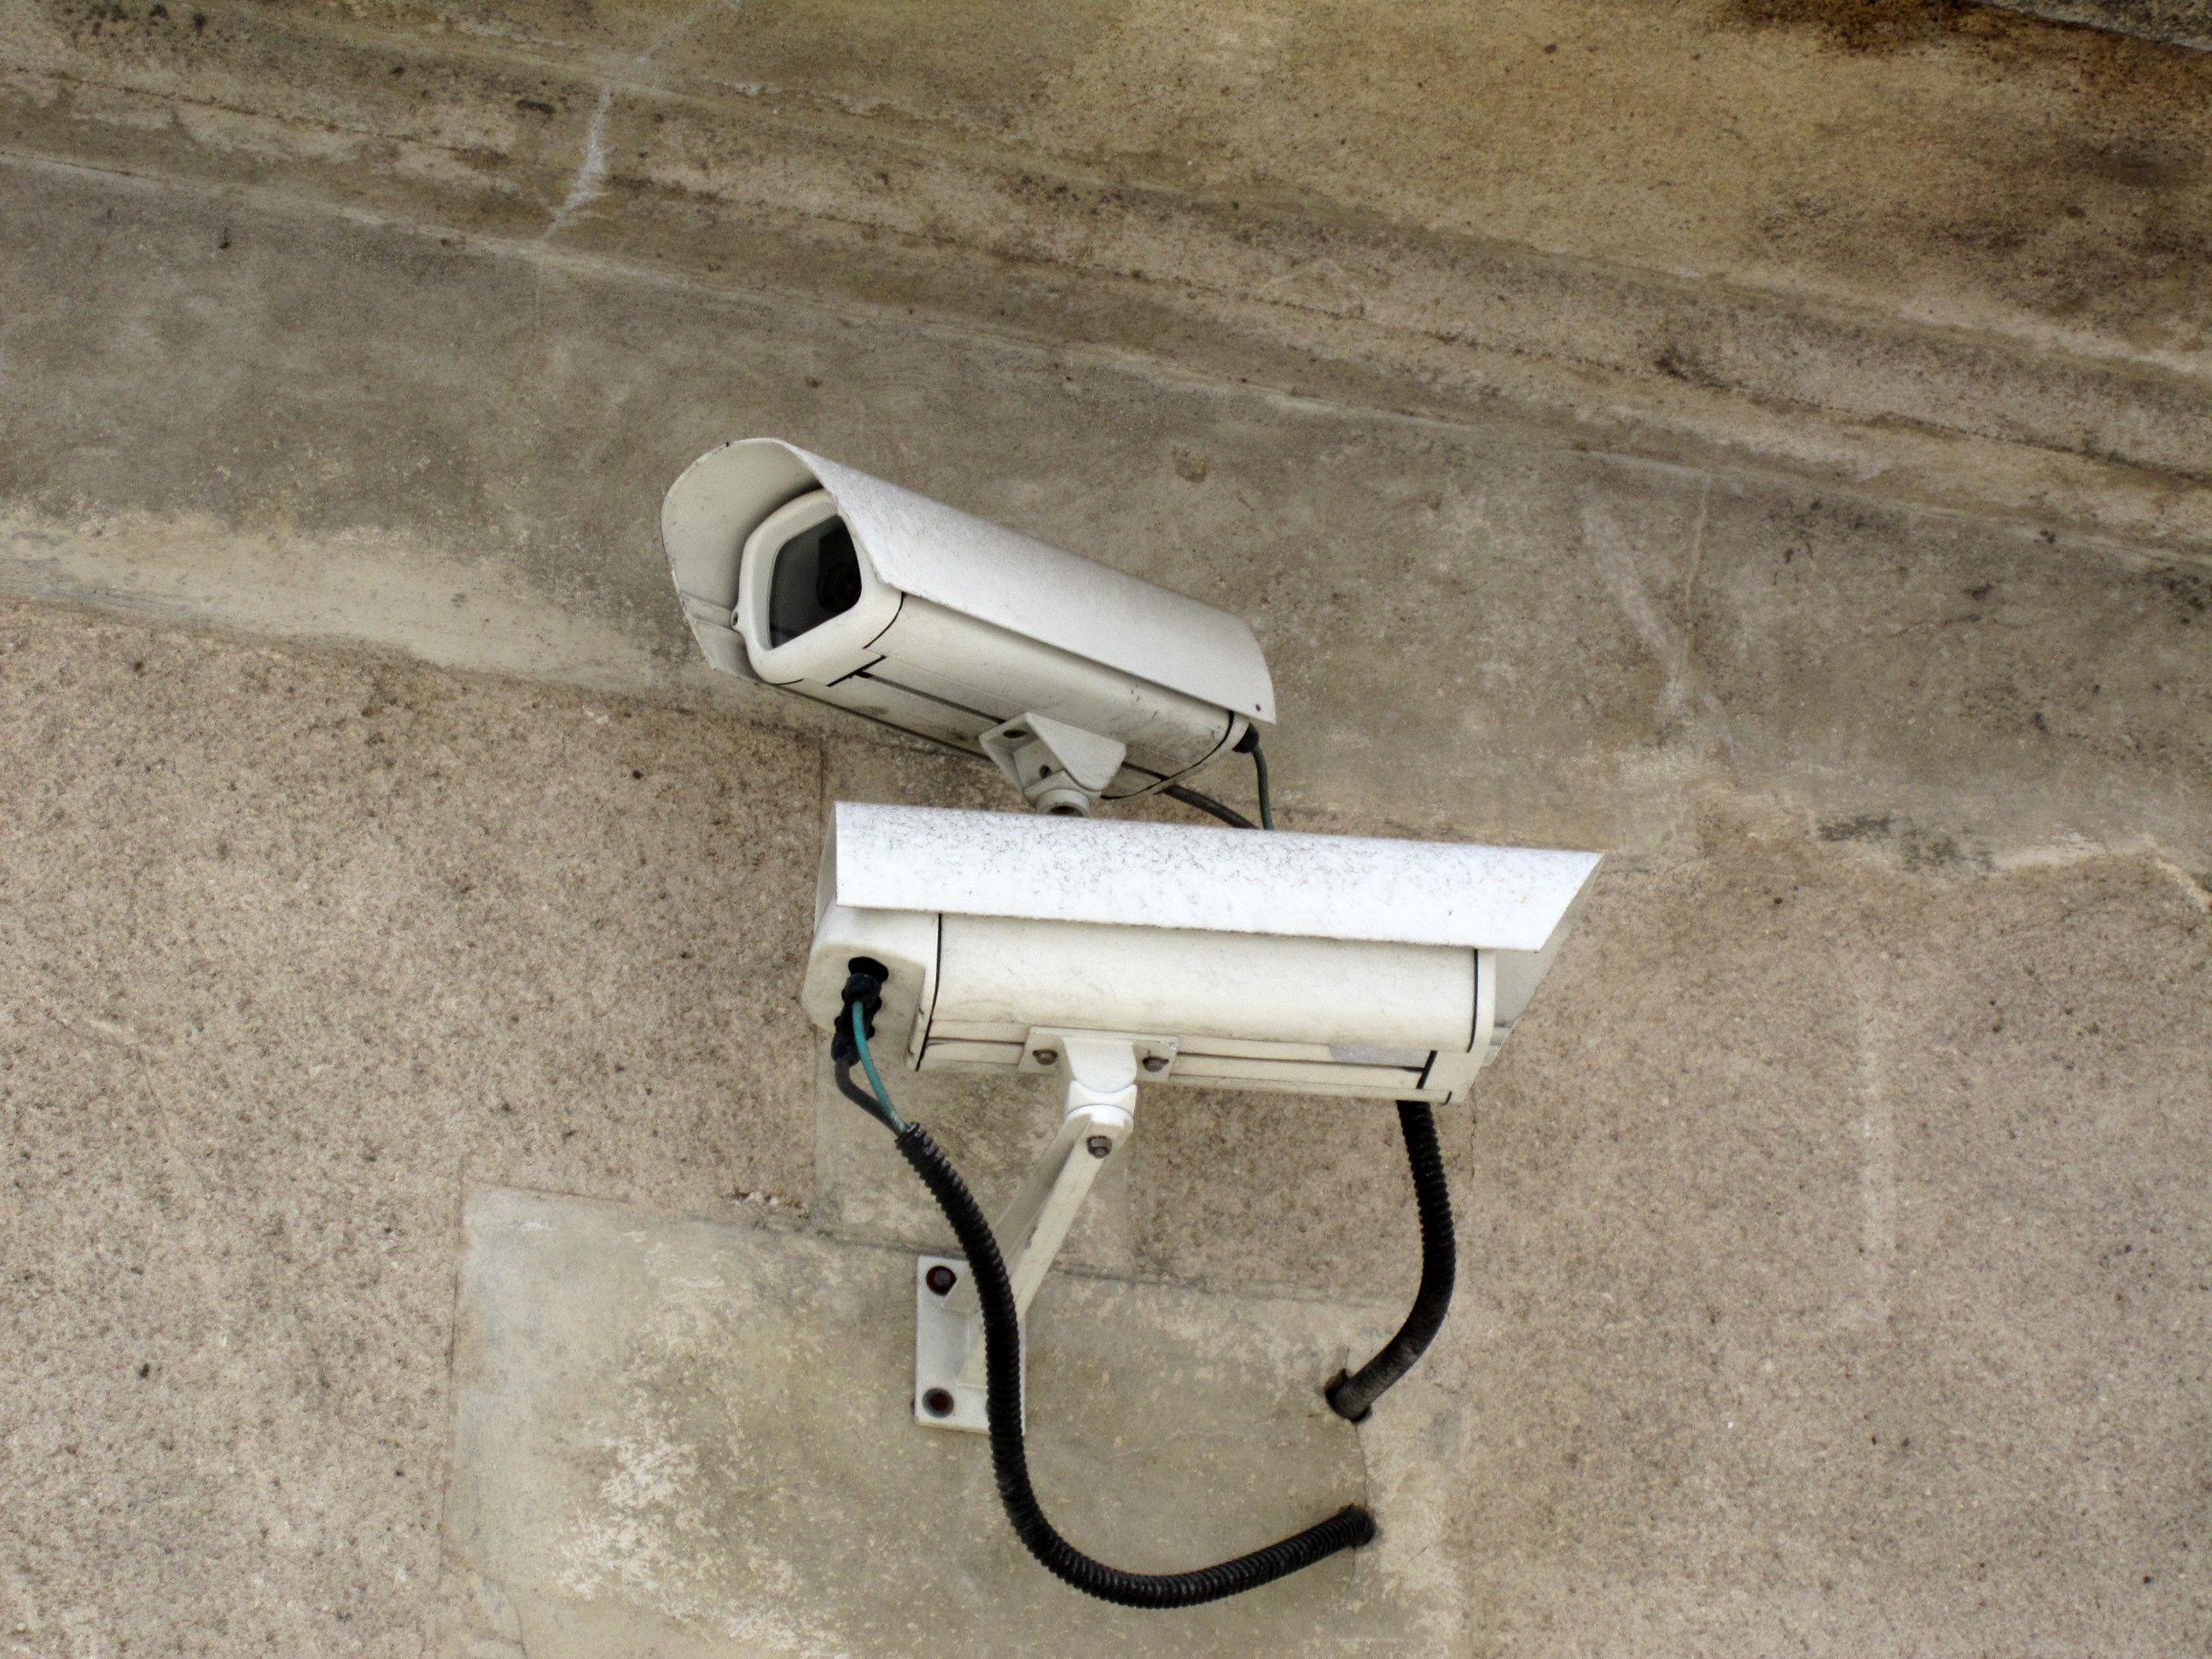 Tunisie: Les caméras de surveillance ont contribué à déjouer des actes criminels, selon Hichem Fourati